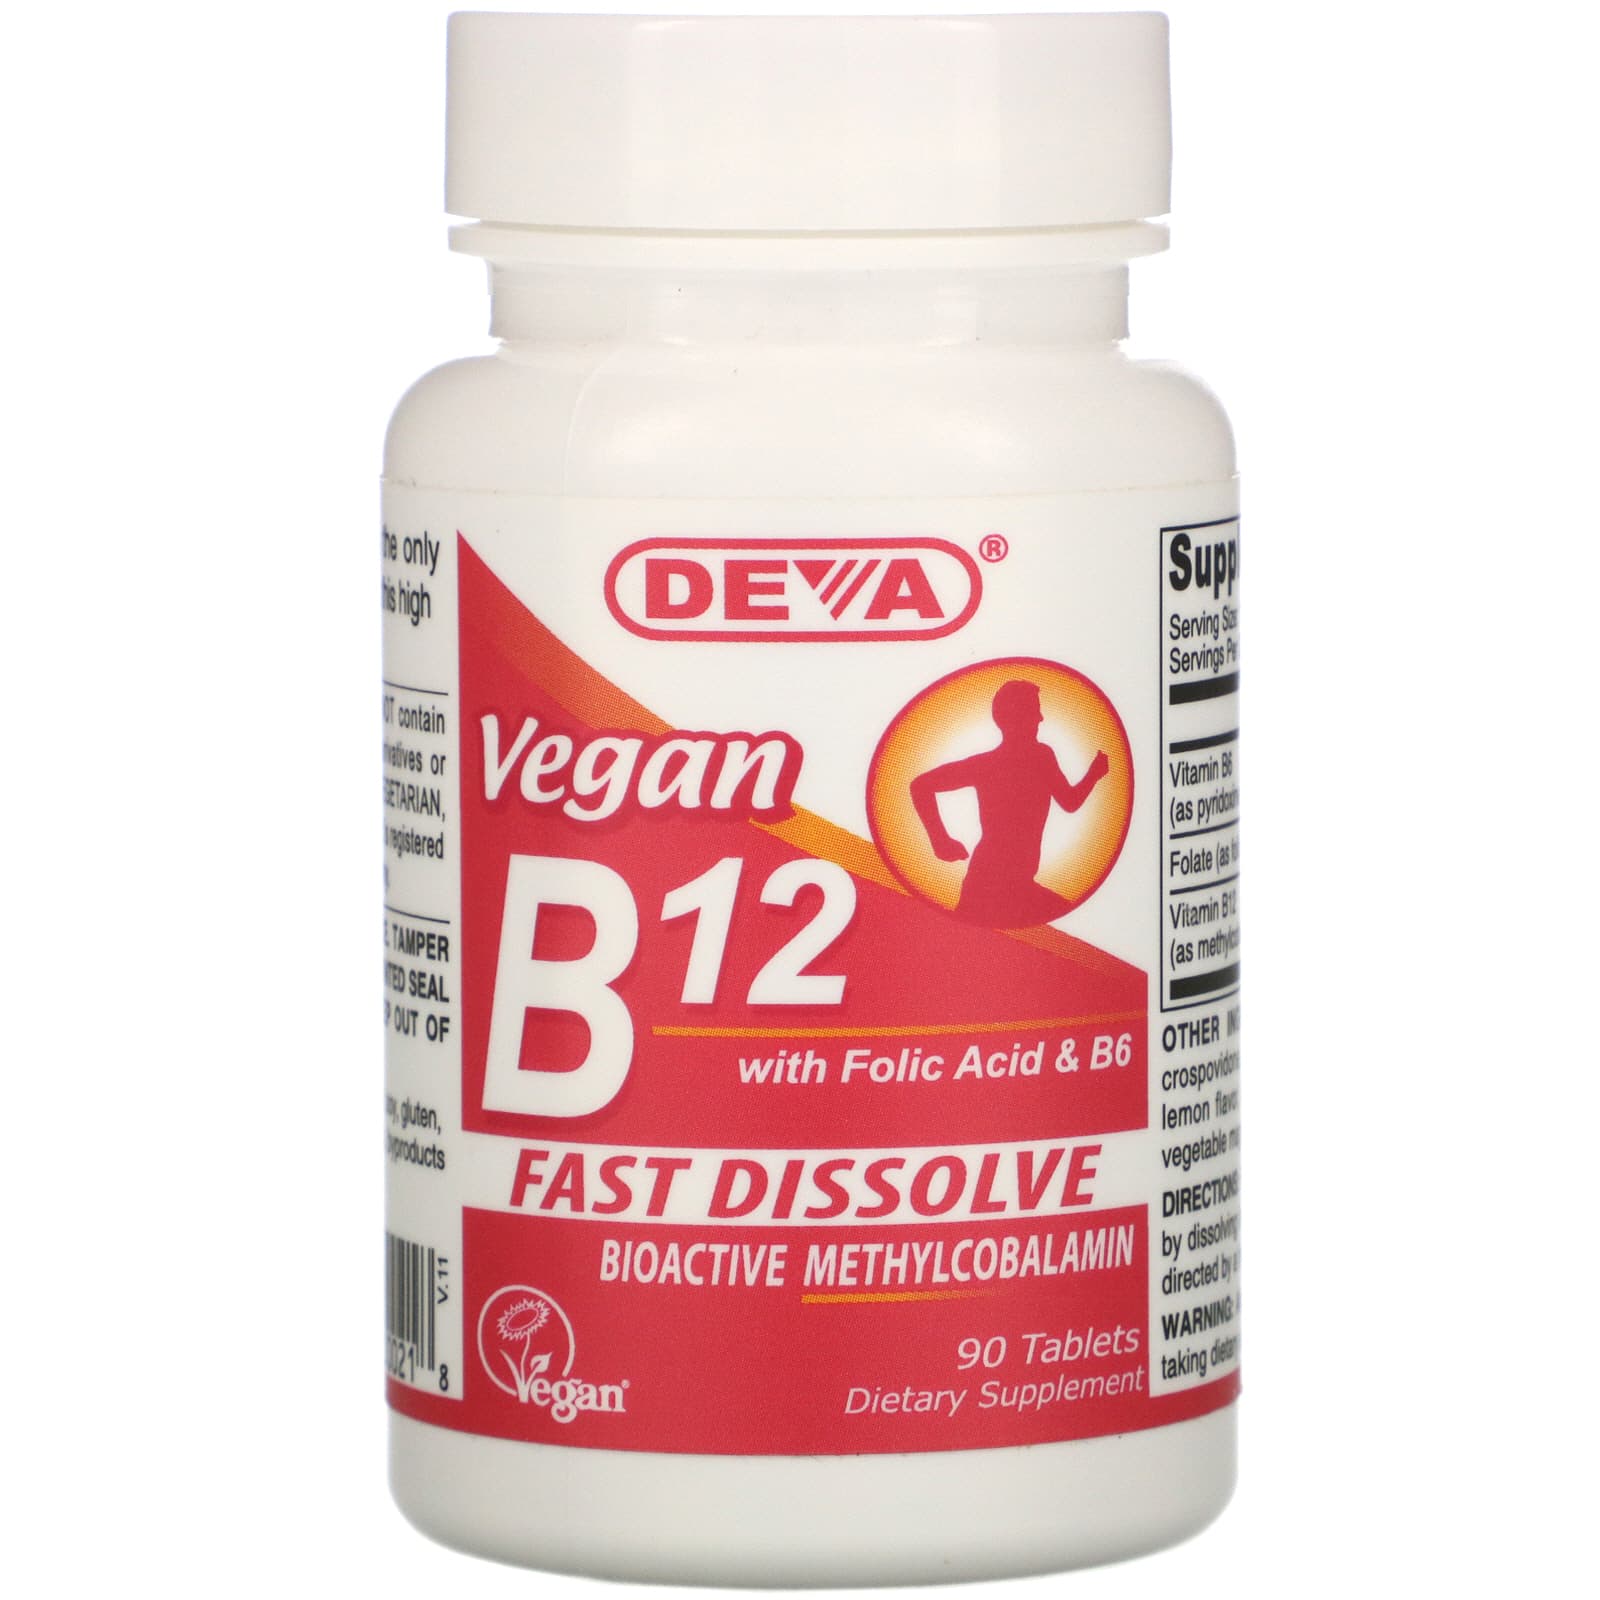 Таблетки b12 с фолиевой кислотой. Метилкобаламин витамин в12. Deva, Vegan b12 with folic acid & b6, fast-dissolve, 90 Tablets. Витамин b12 препараты. Витамин b12 в таблетках.